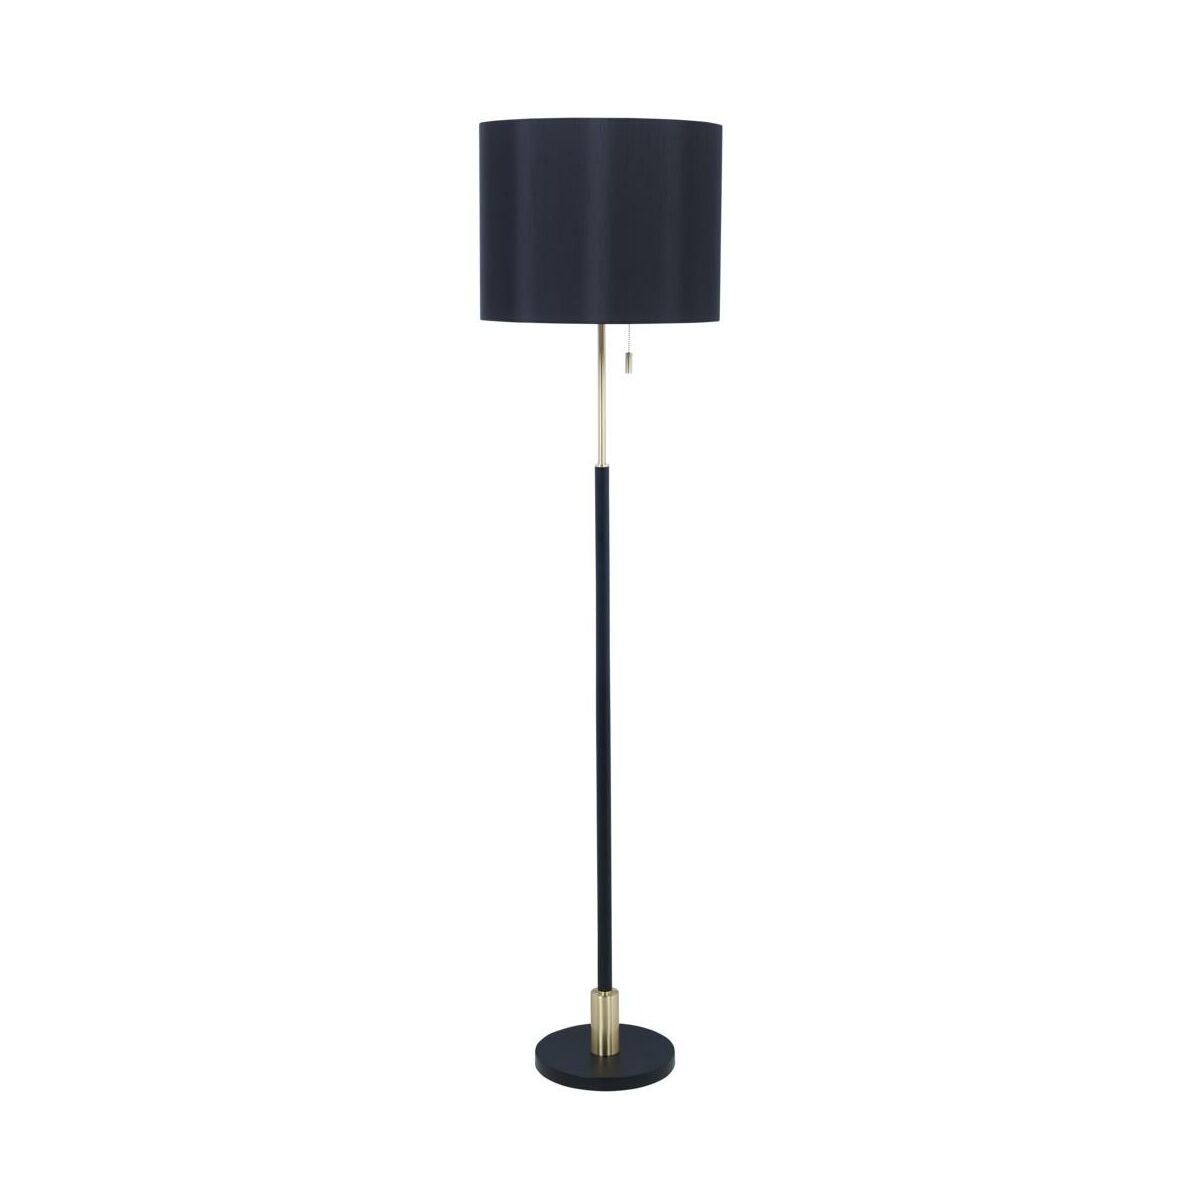 Lampa Podlogowa Berlin Czarna E27 Oriva Ab Lampy Podlogowe Dekoracyjne W Atrakcyjnej Cenie W Sklepach Leroy Merlin